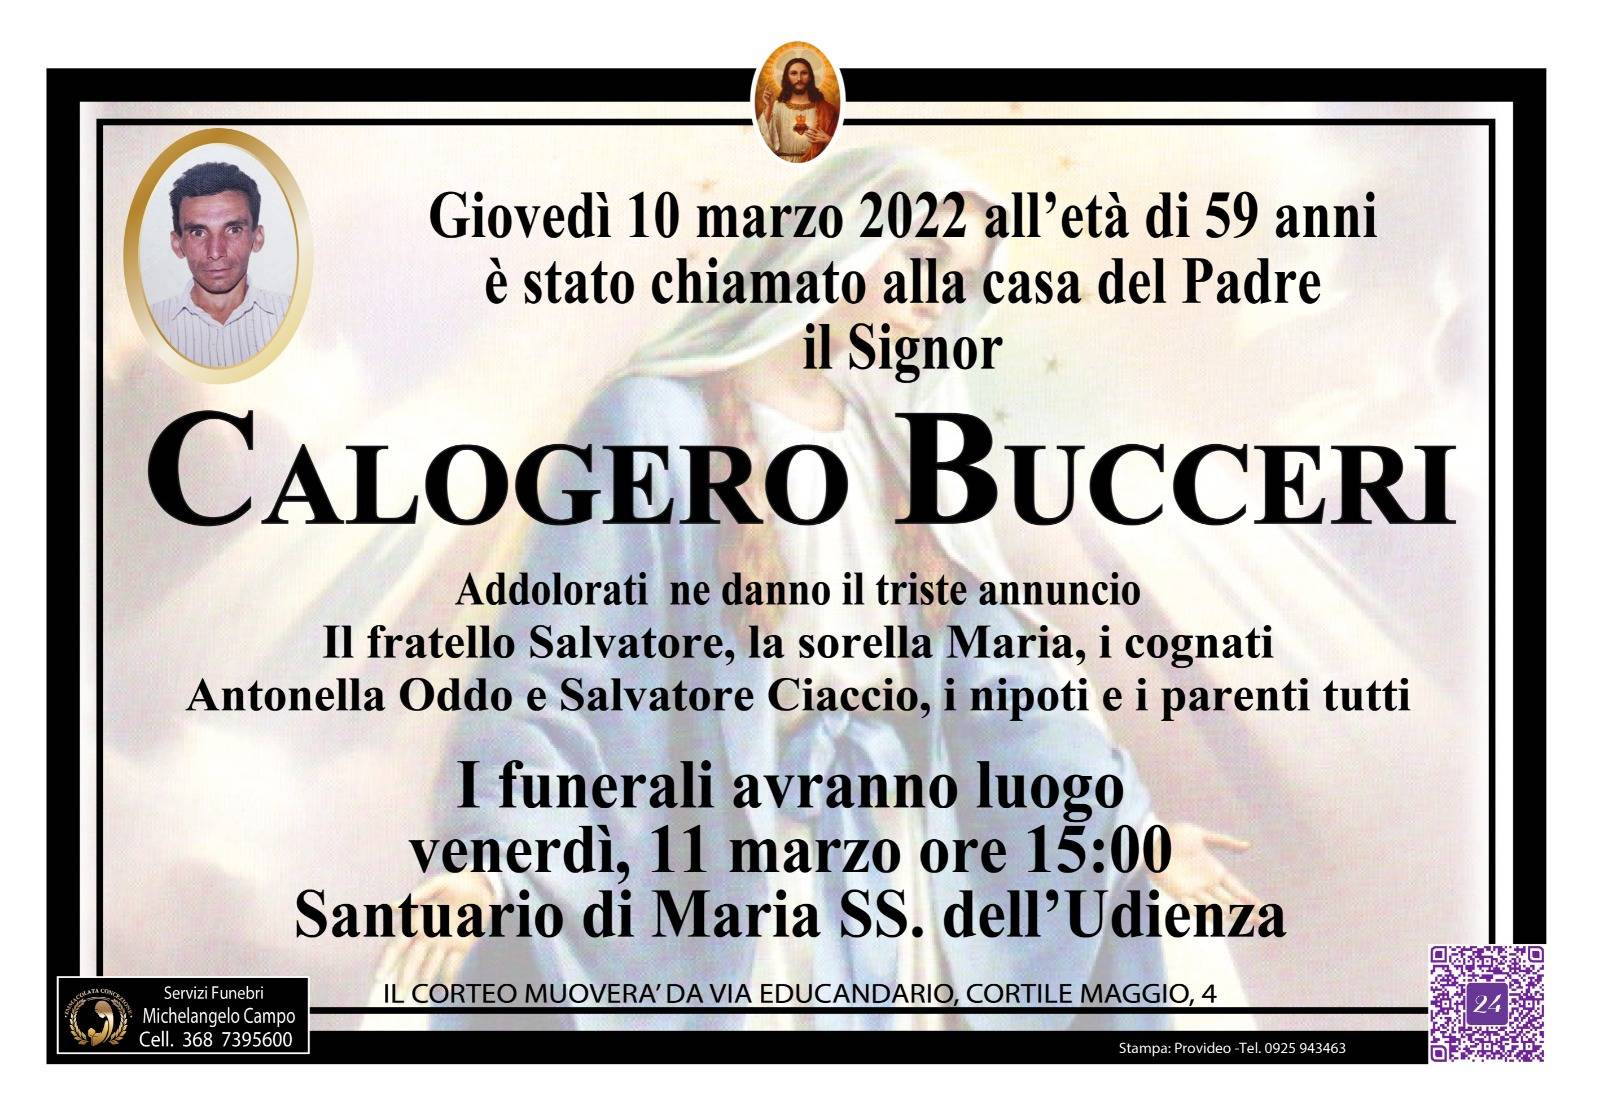 Calogero Bucceri